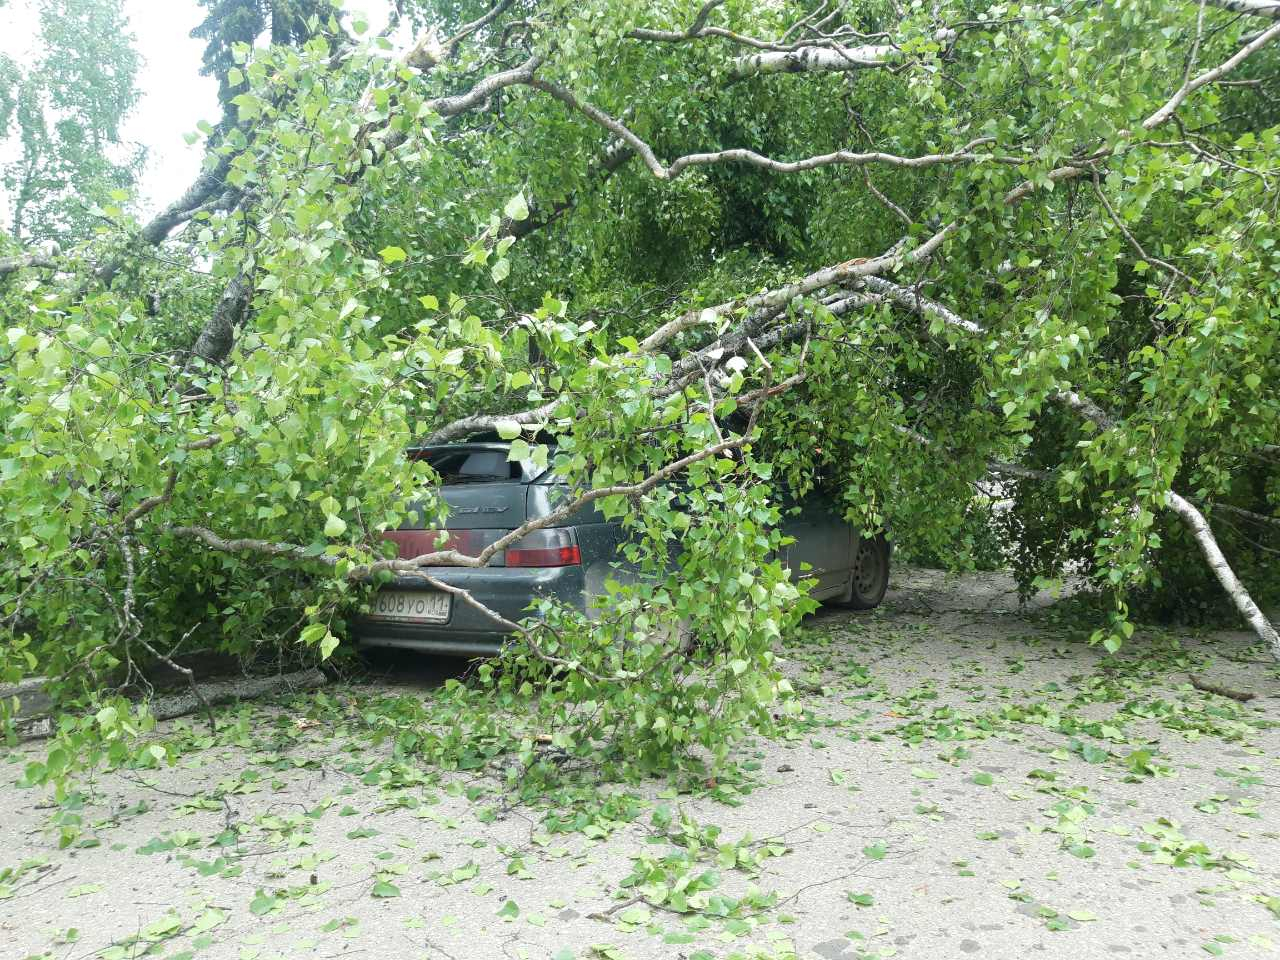 Фото дня в Сыктывкаре: на машину упала большая береза